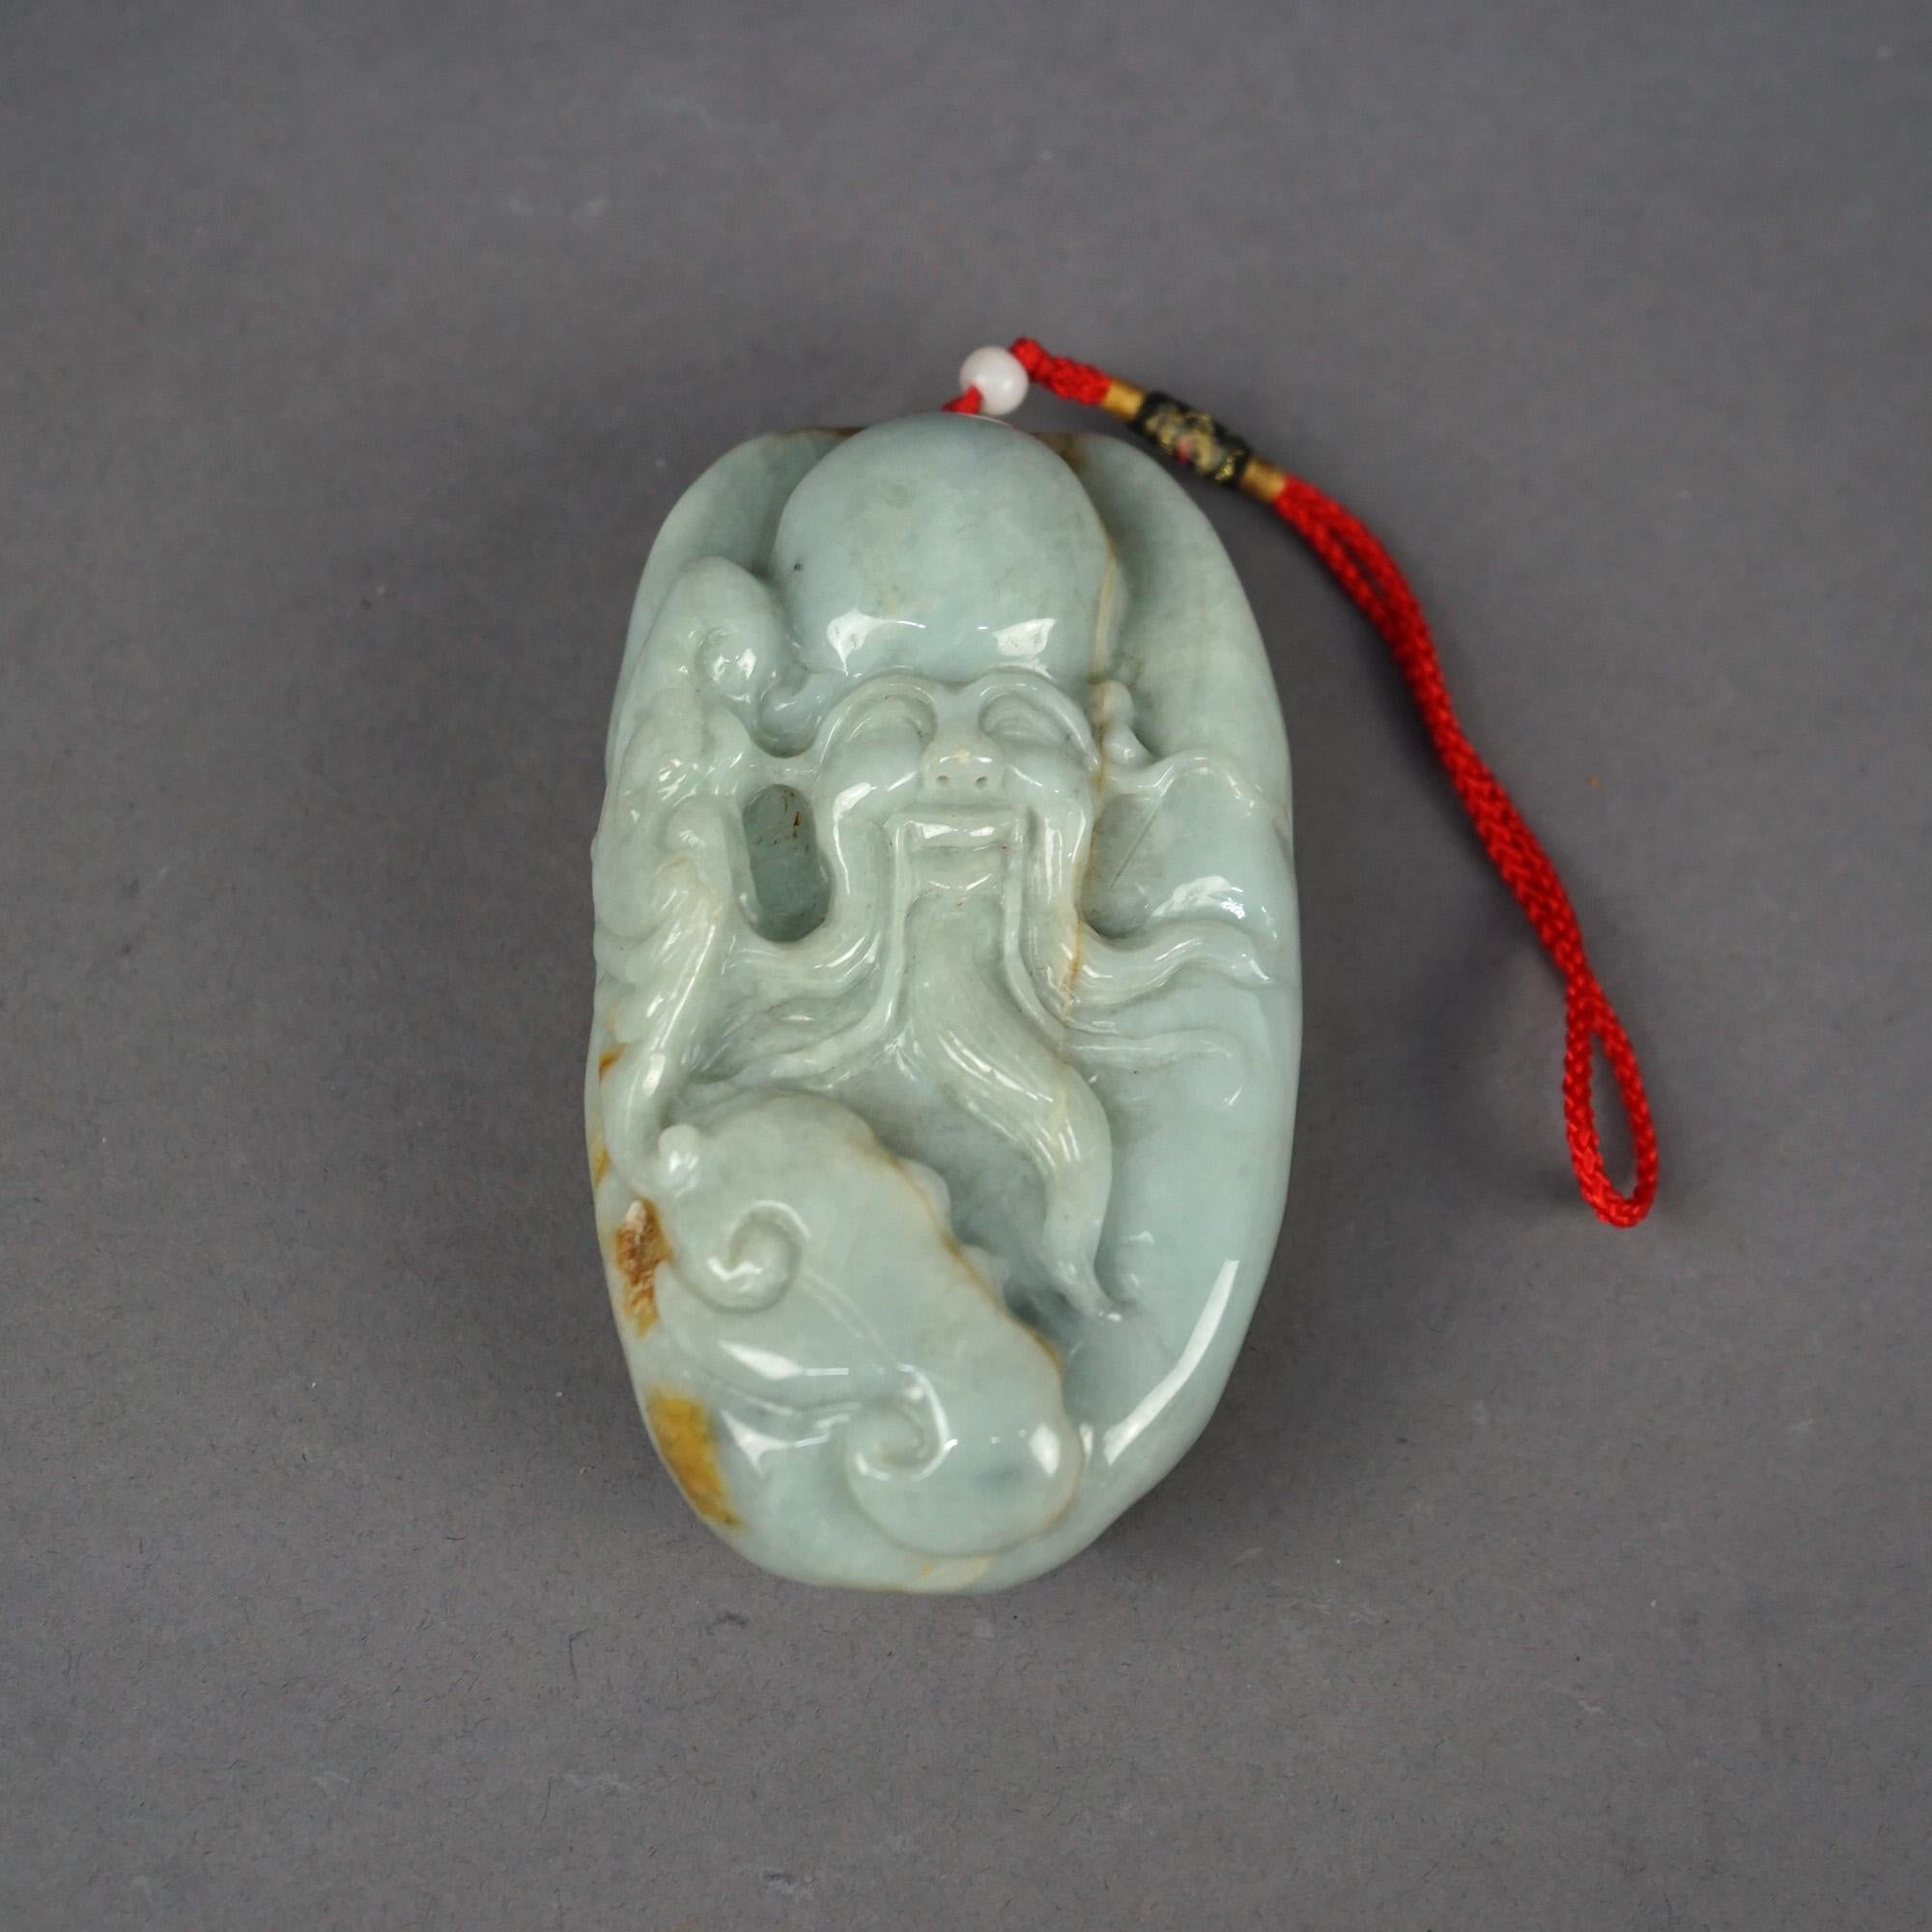 Octopus de sagesse chinois ancien sculpté en jade céladon 19ème siècle

Dimensions : 4,5''H x 2,5''W x 1,5''D